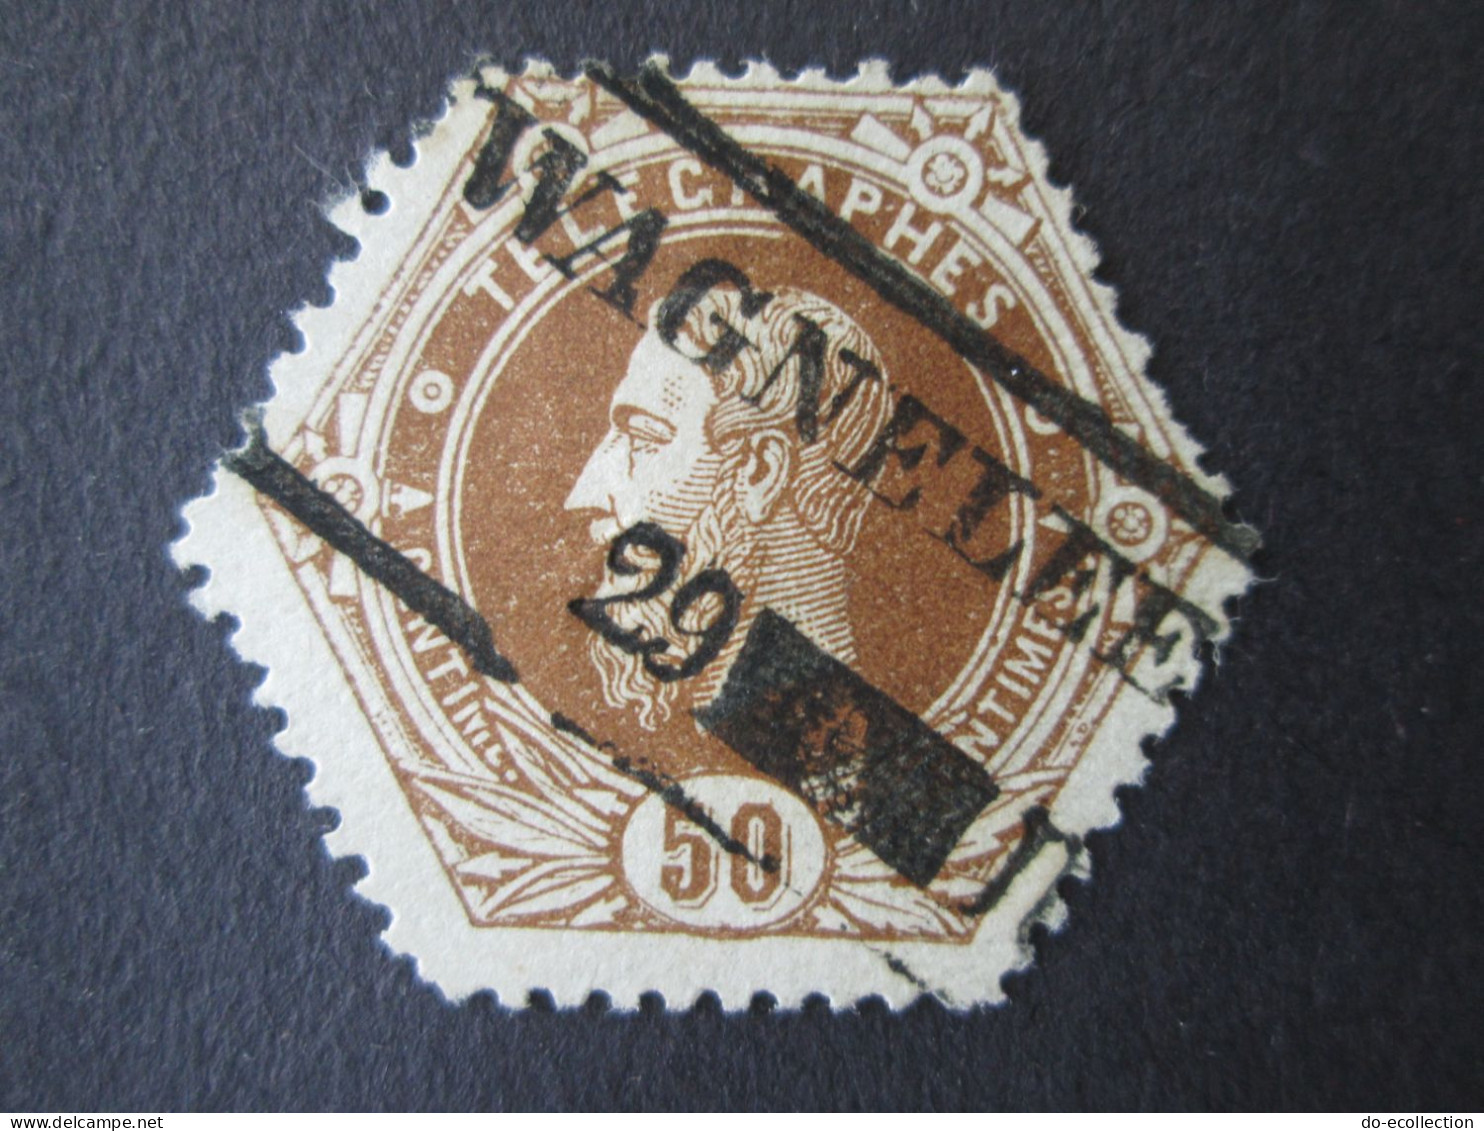 BELGIQUE Timbre Télégraphe 1871 50c WAGNELEE Leopold II Belgie Belgium Timbre Stamp - Timbres Télégraphes [TG]